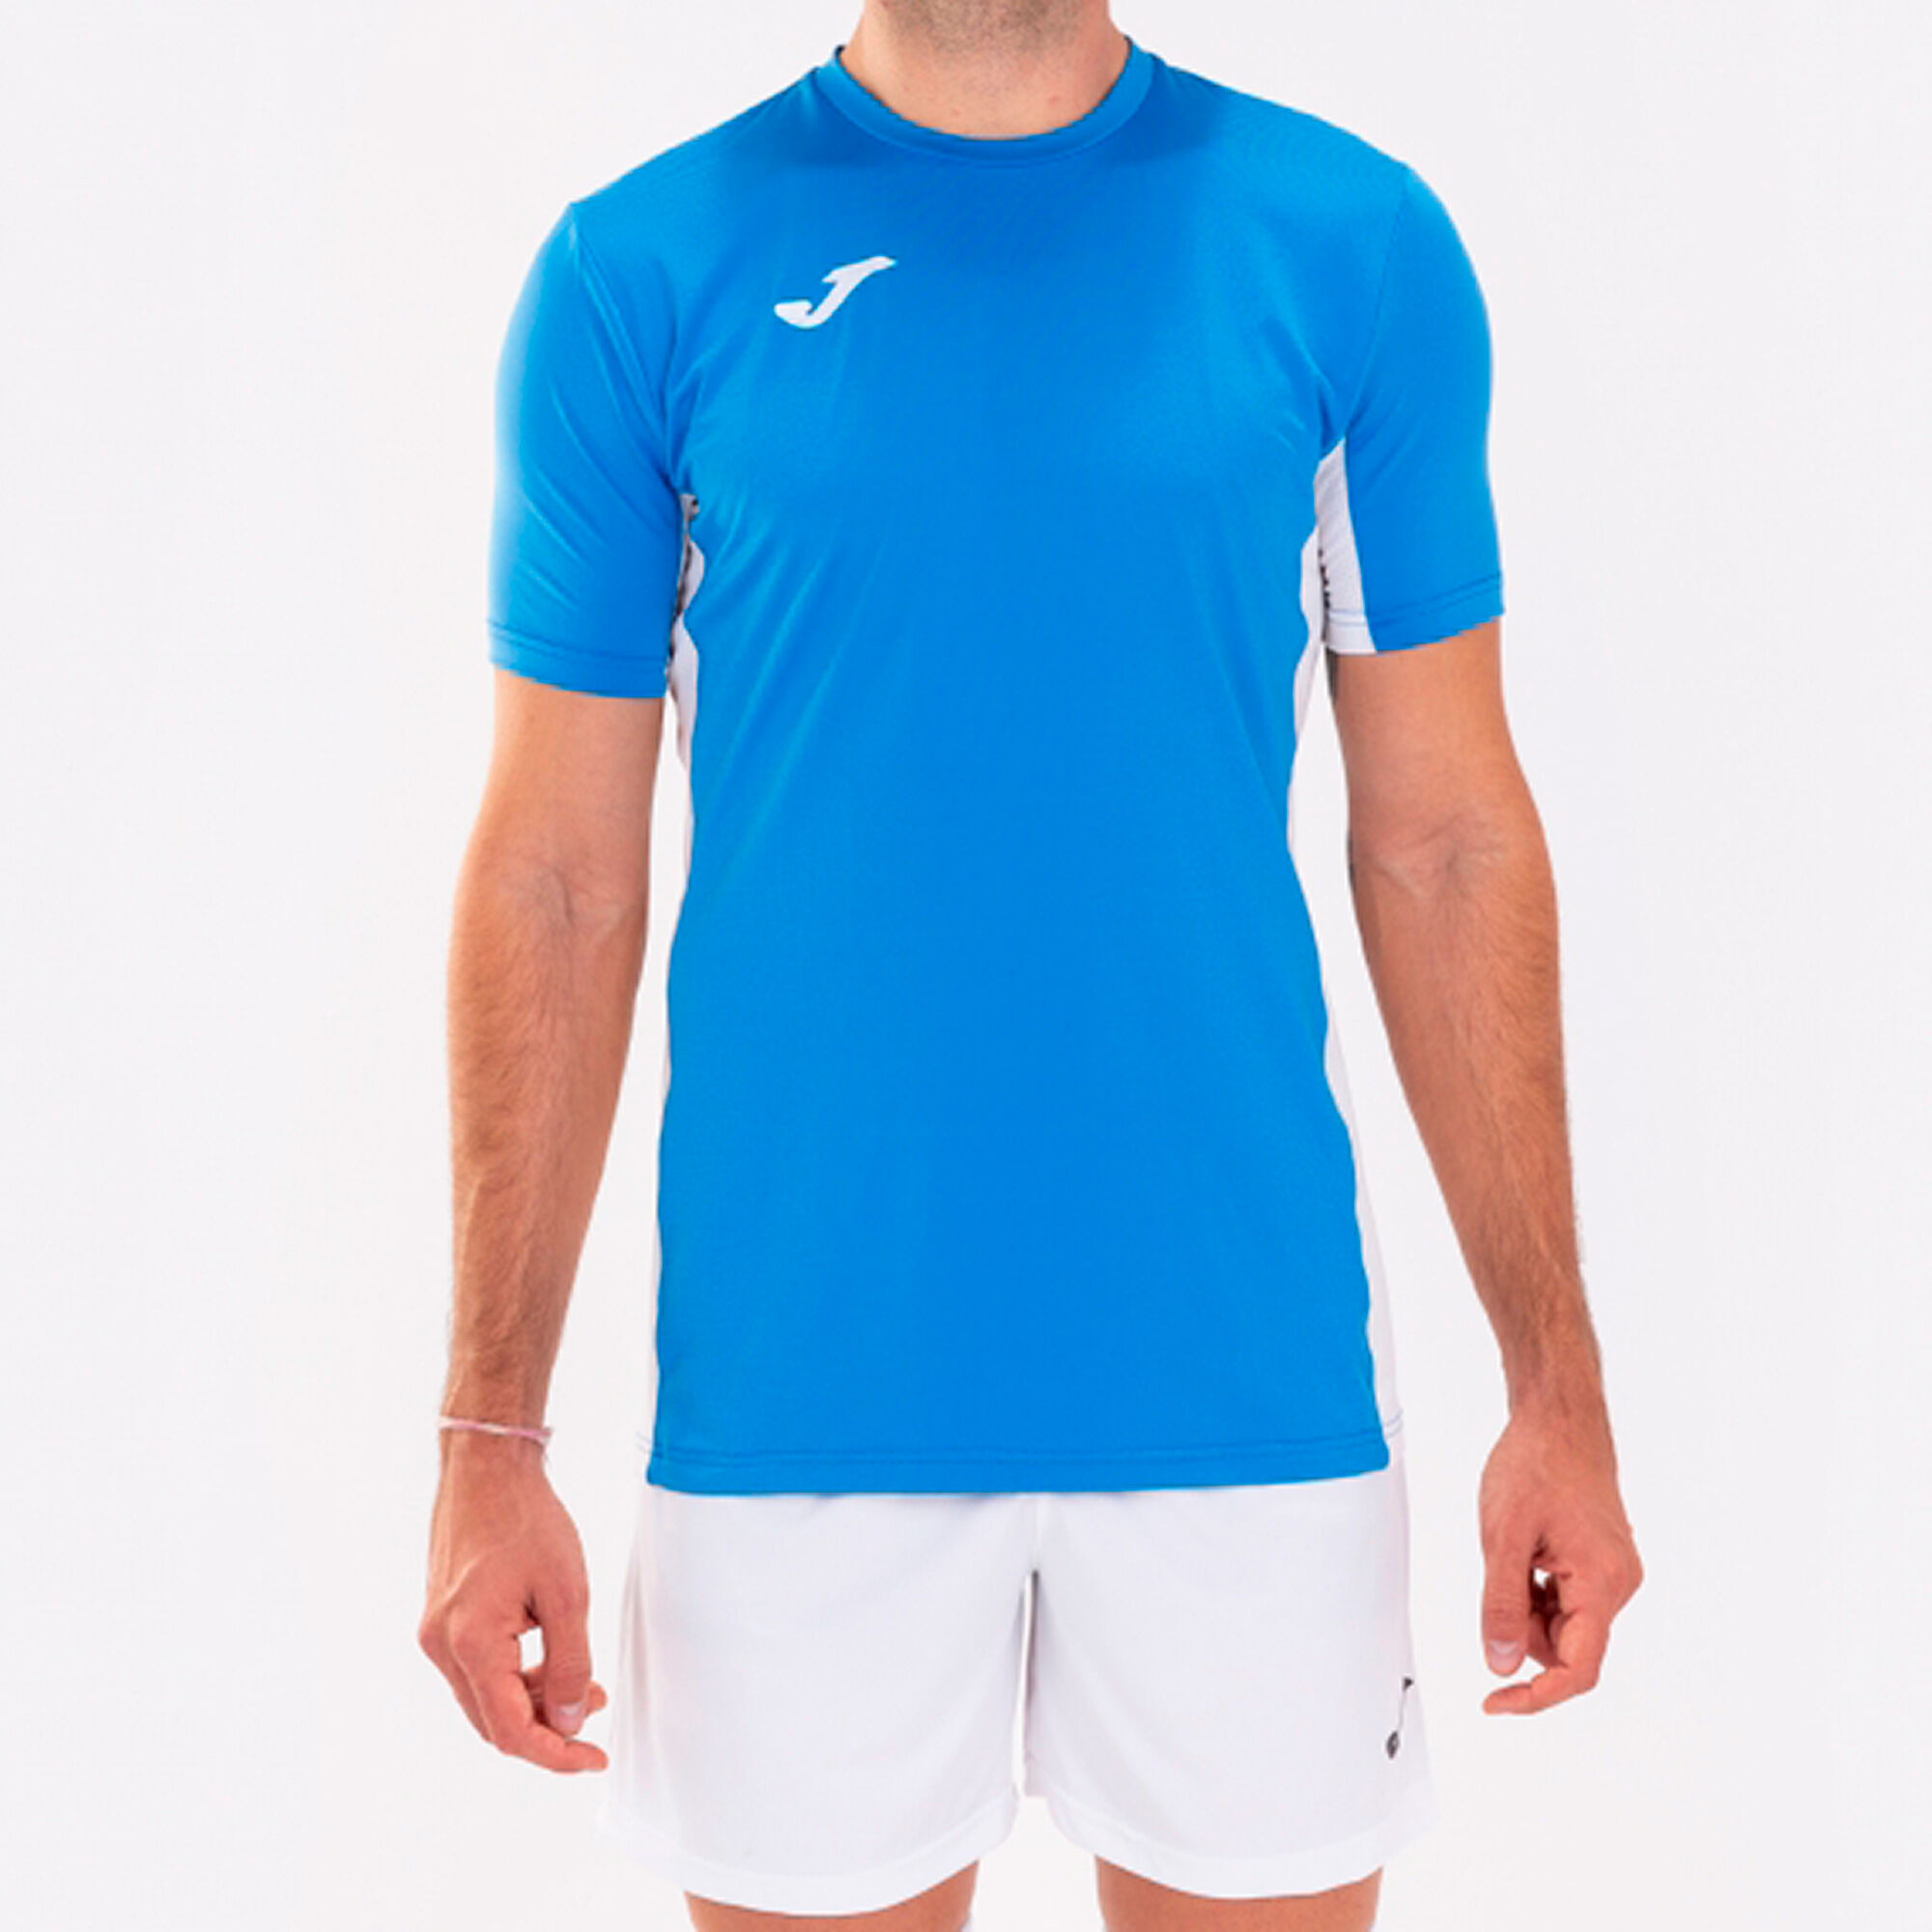 Koszulka z krótkim rękawem mężczyźni Superliga niebieski royal bialy